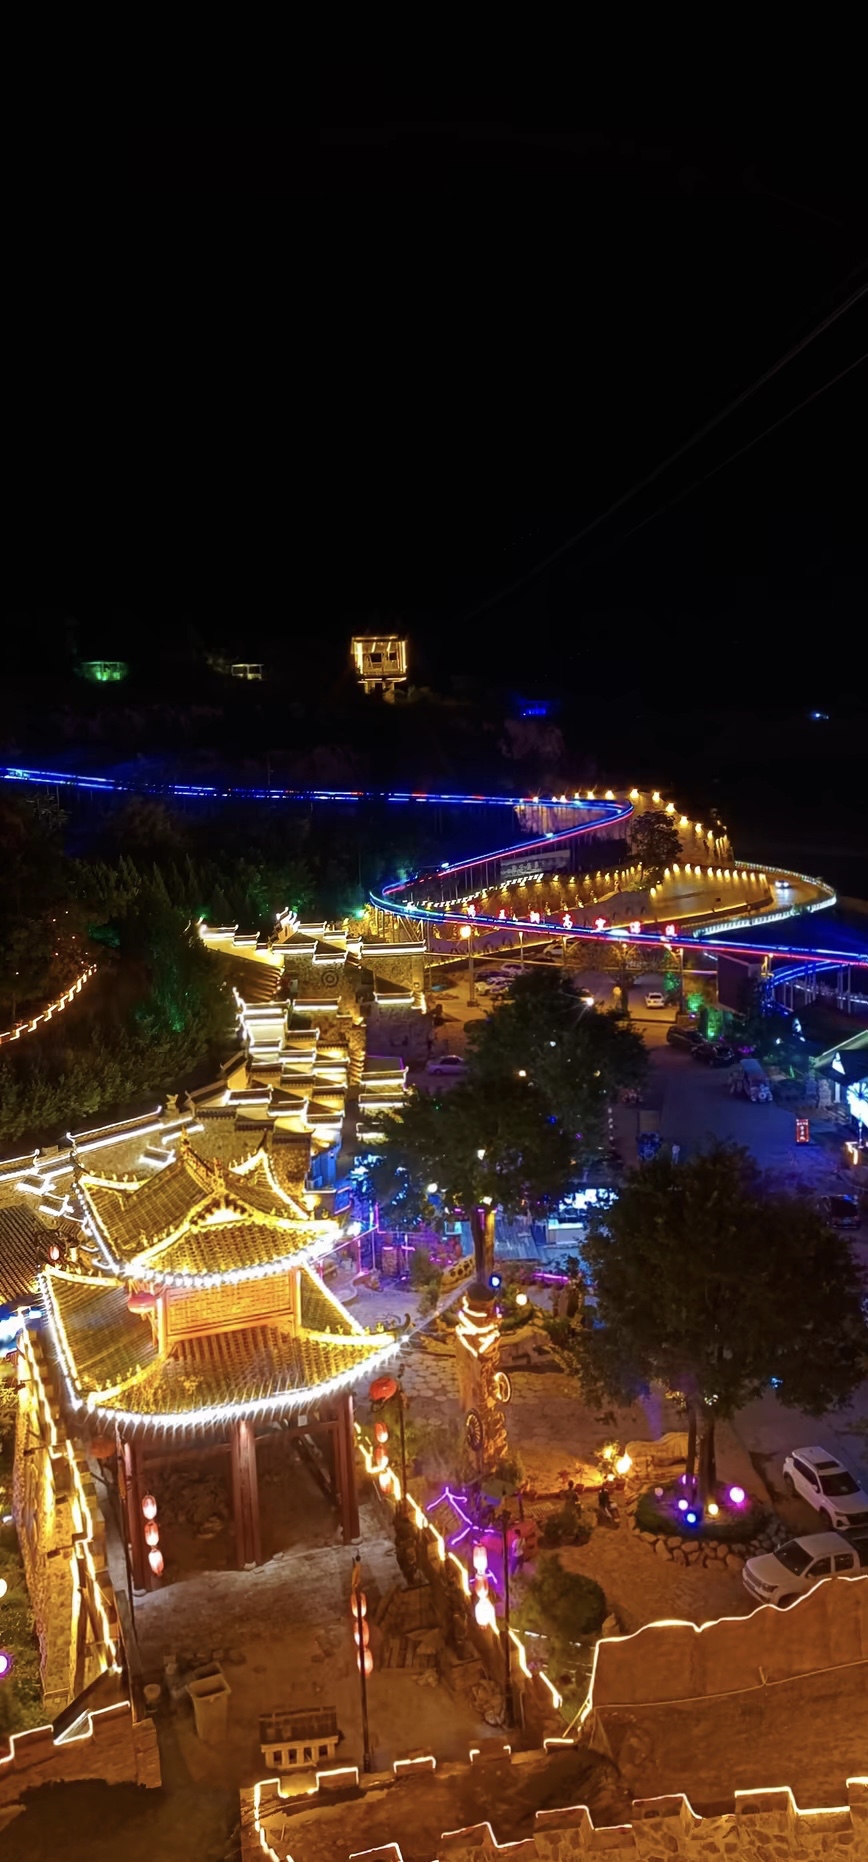 庆阳马嵬驿景区位于甘肃庆城县柔远河东侧，是一处集旅游、餐饮、娱乐等为一体的陇东民俗文化旅游区。该景区